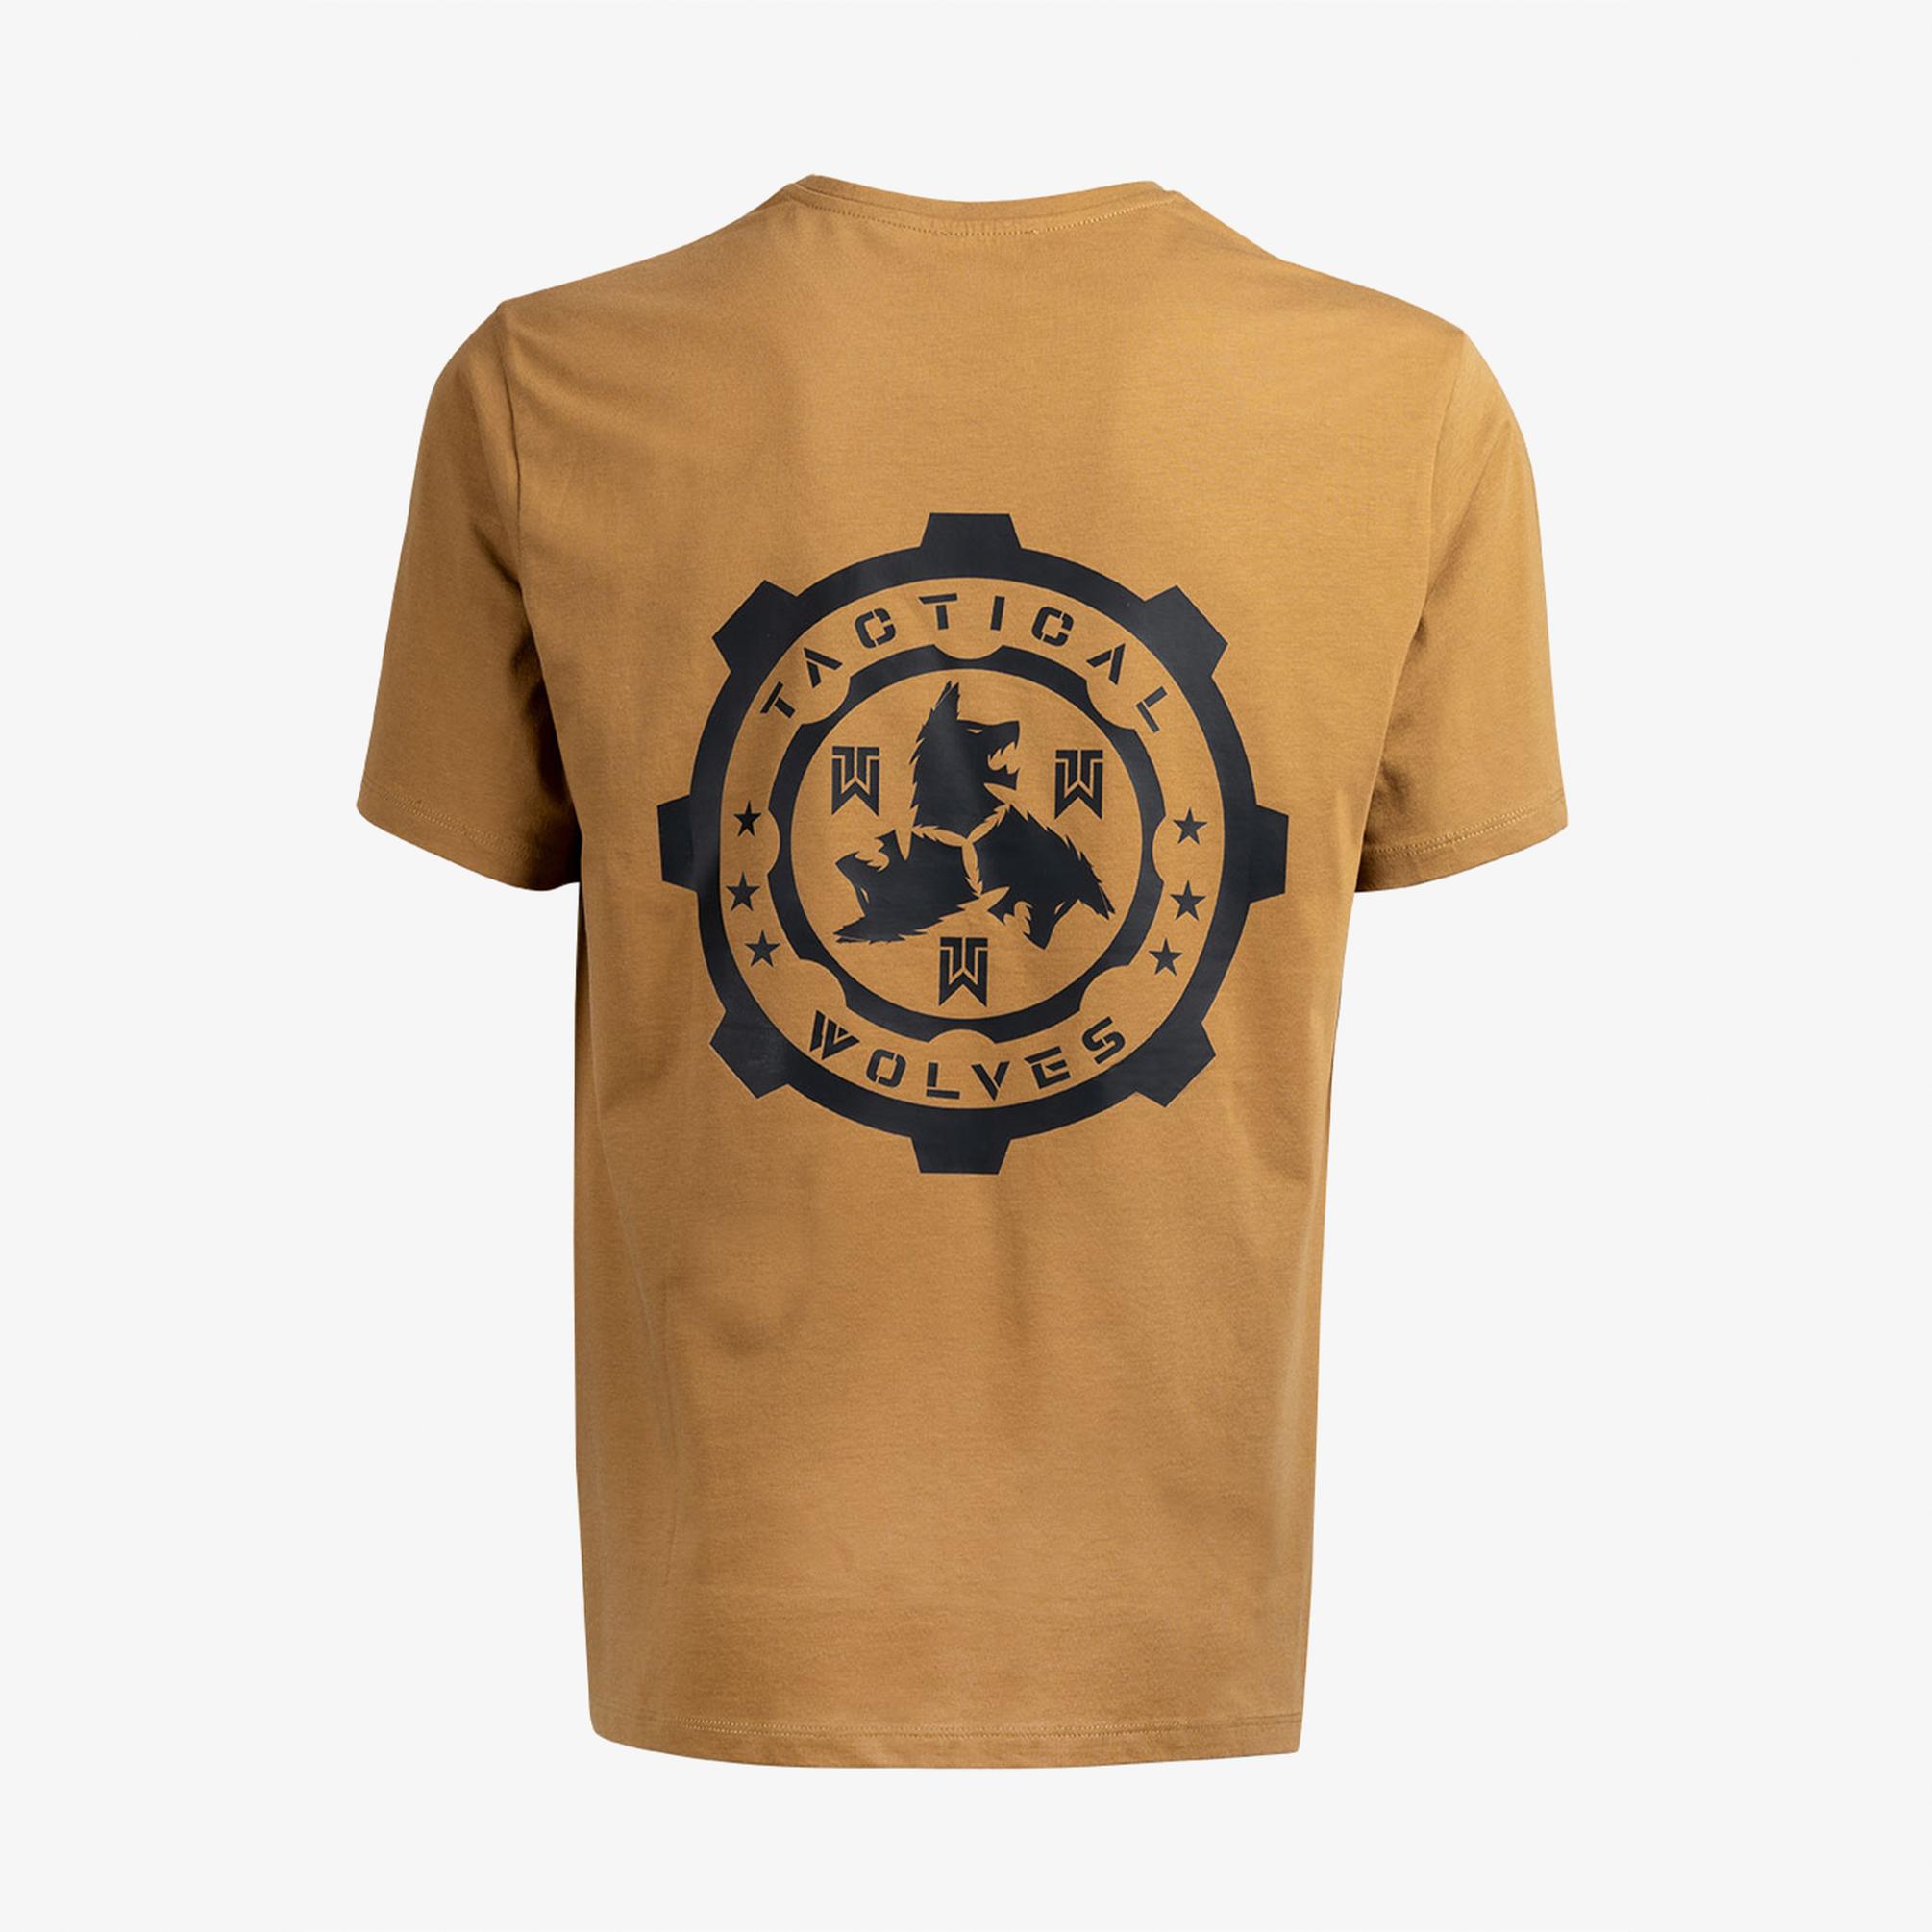  Tactical Wolves Classic Erkek Bej T-Shirt